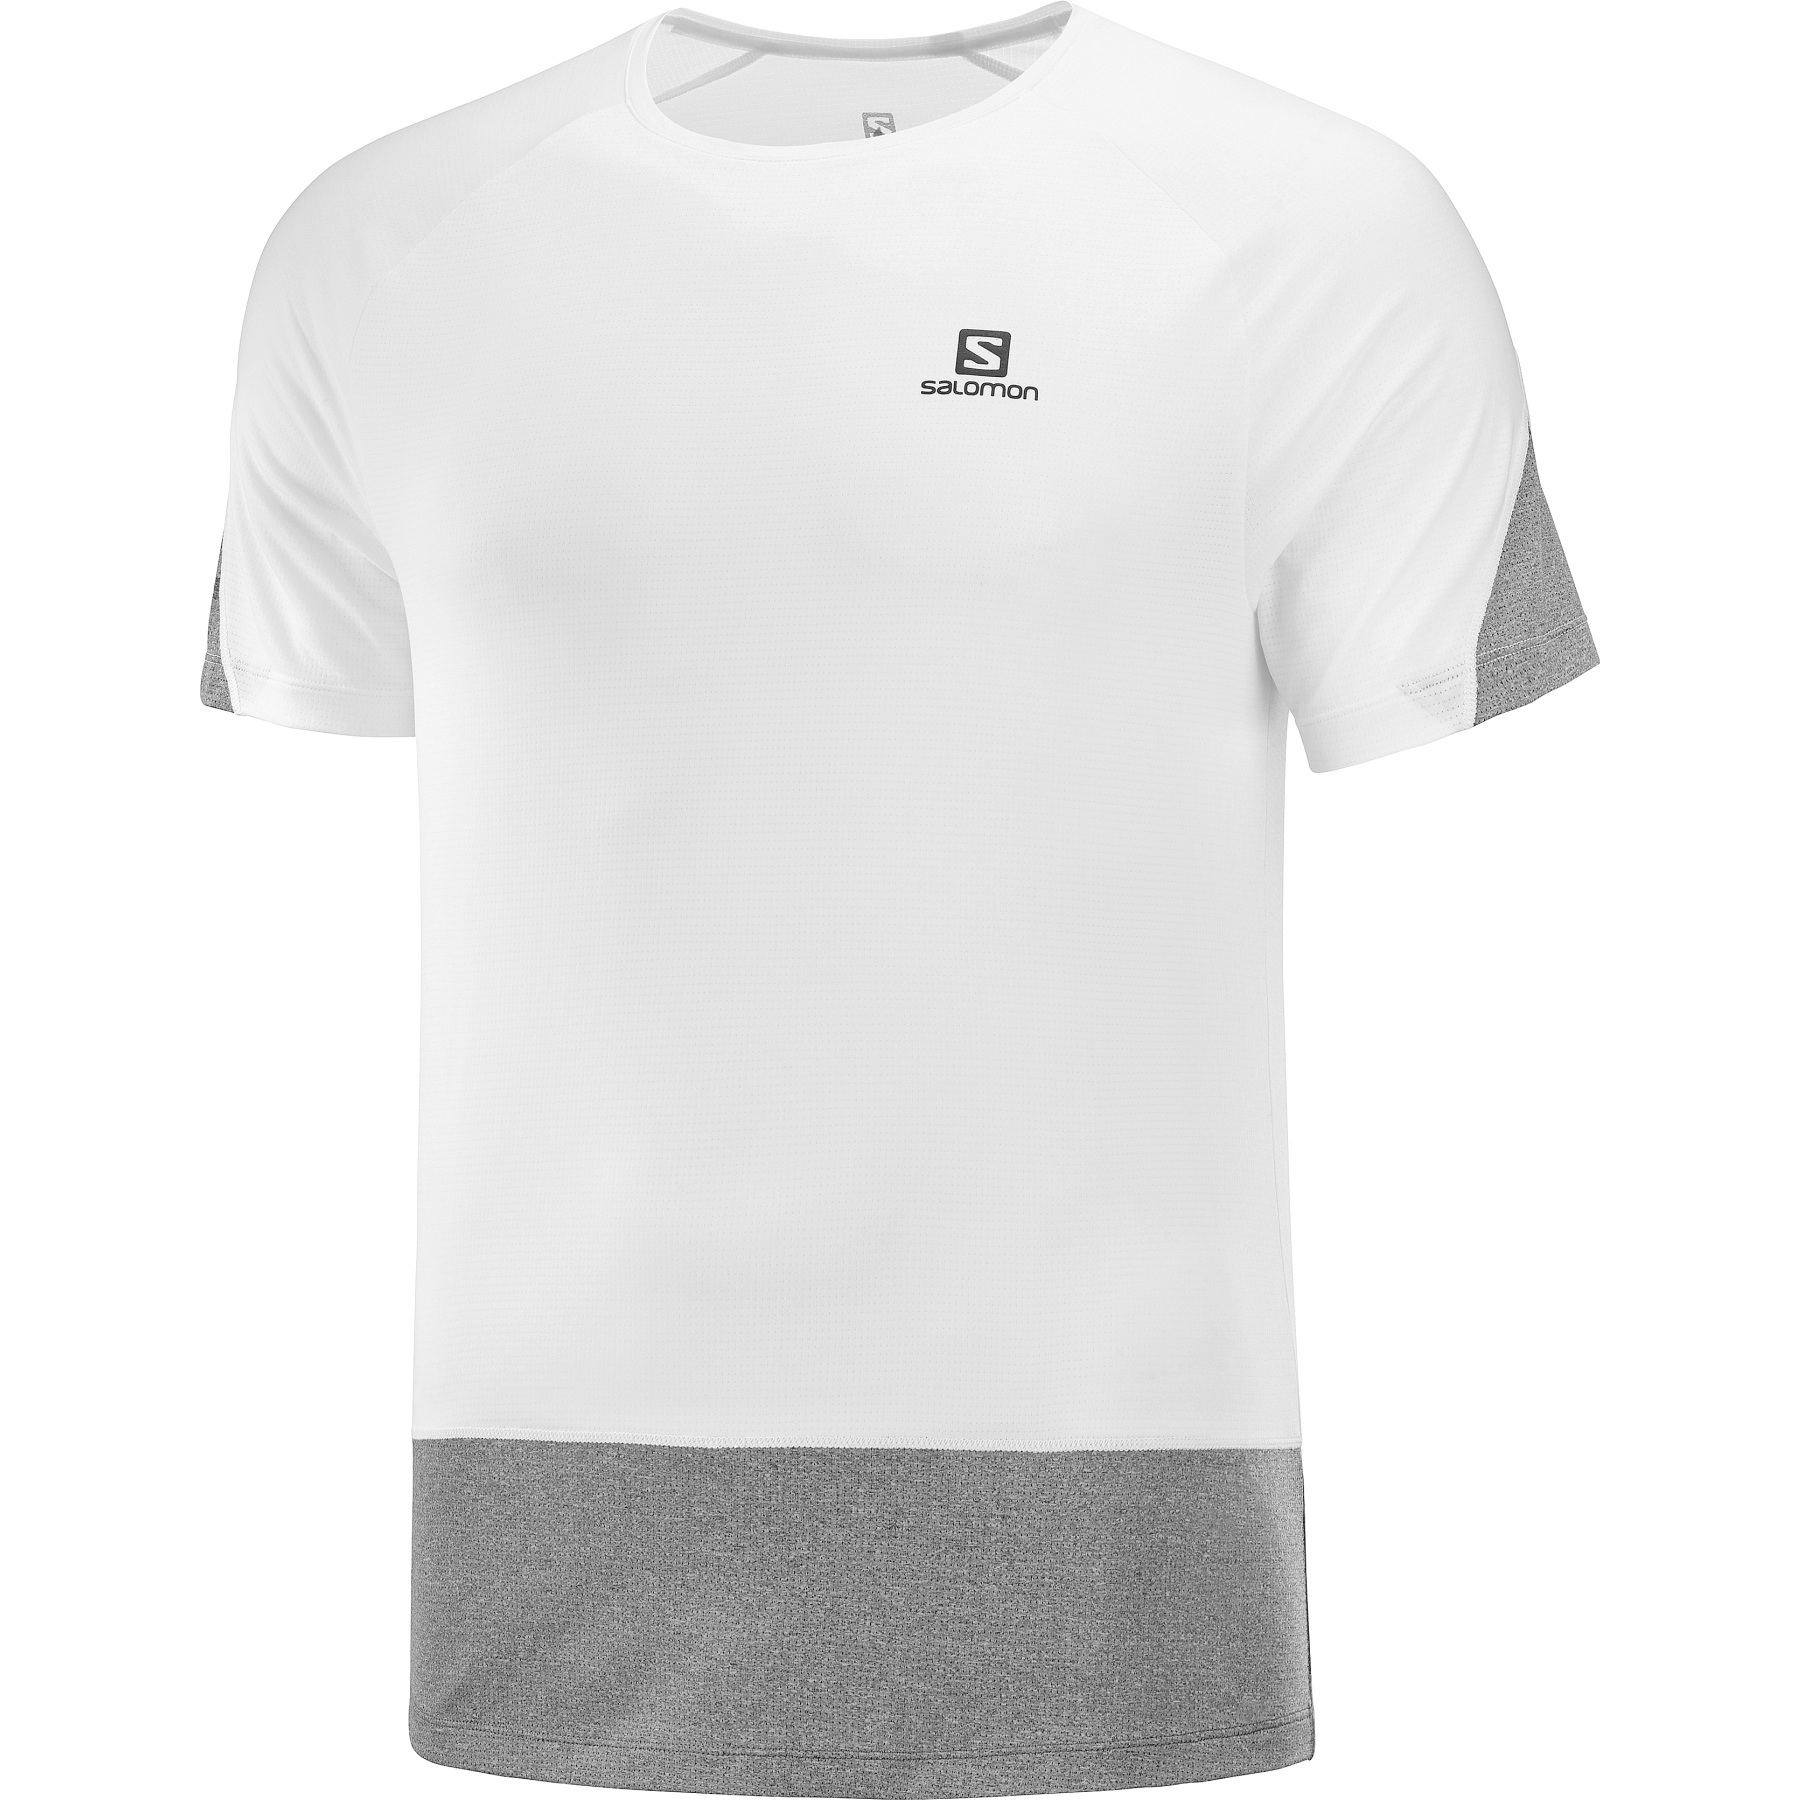 Produktbild von Salomon Cross Run T-Shirt - white/black/heather